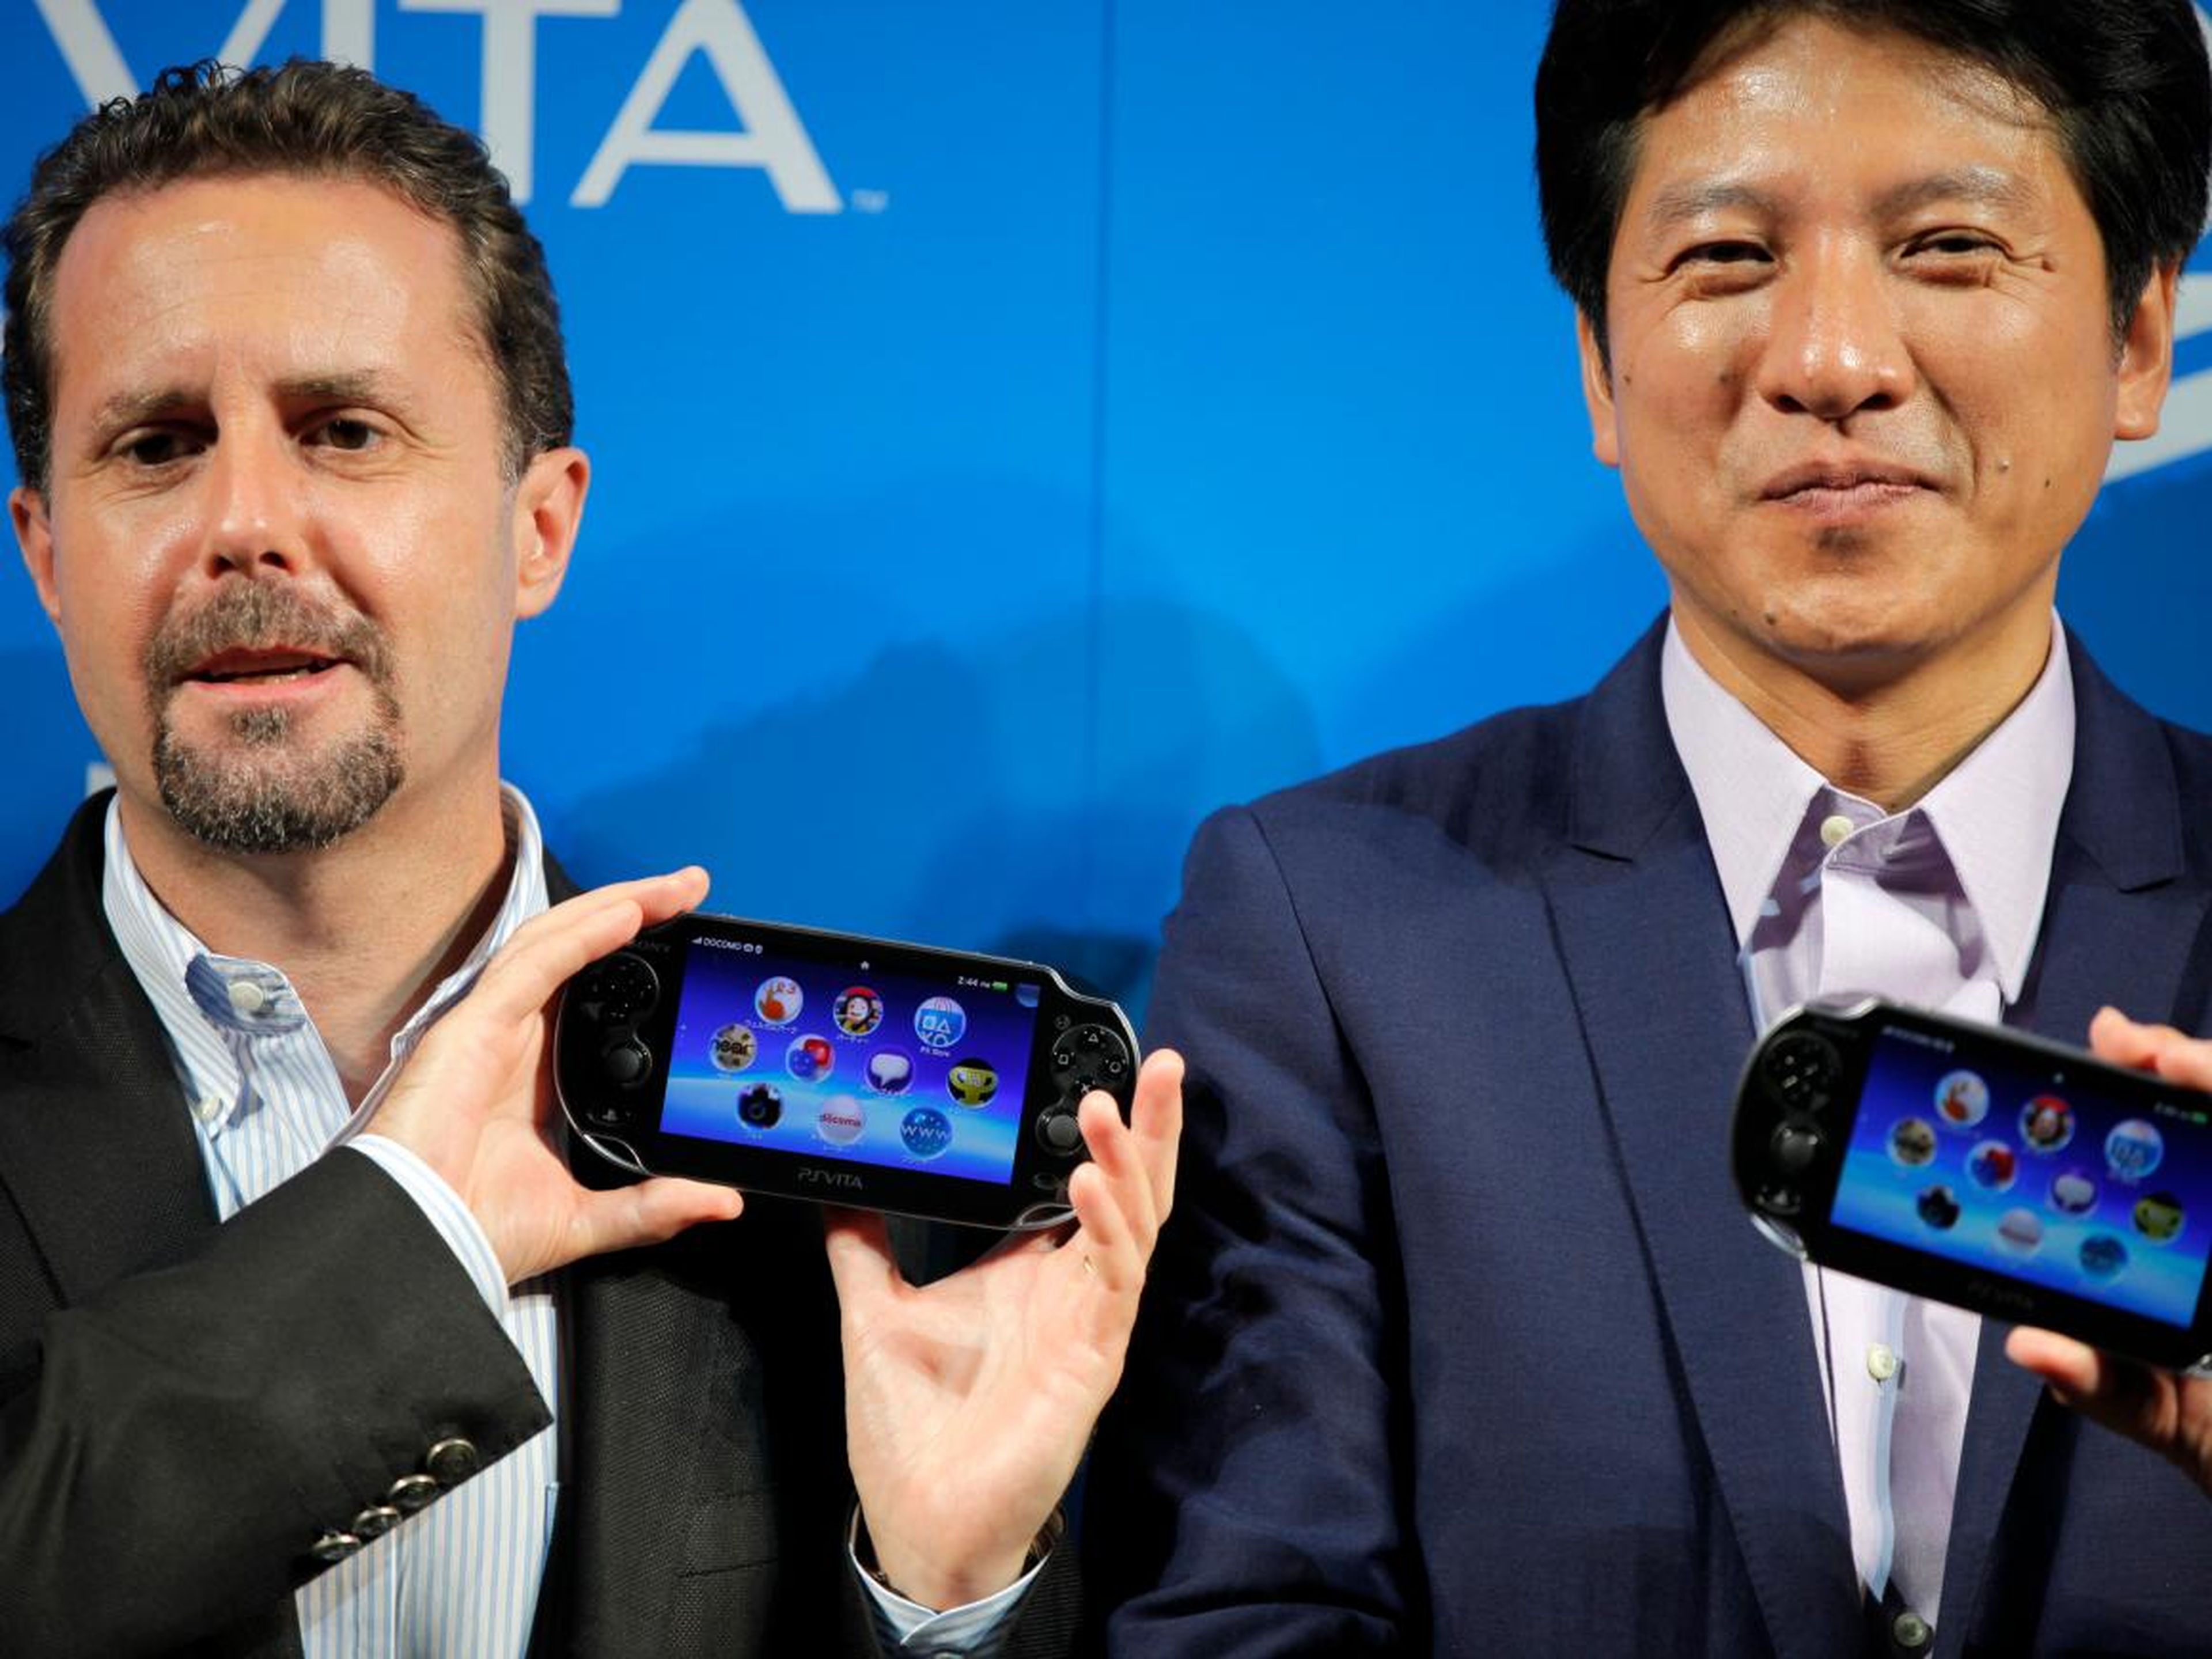 El ex CEO del Grupo Sony Computer Entertainment Inc. (SCE), Andrew House, izquierda, y el presidente de SCE Japan, Hiroshi Kawano, presentaron la PlayStation Vita durante una conferencia de prensa en Tokio el 14 de septiembre de 2011.